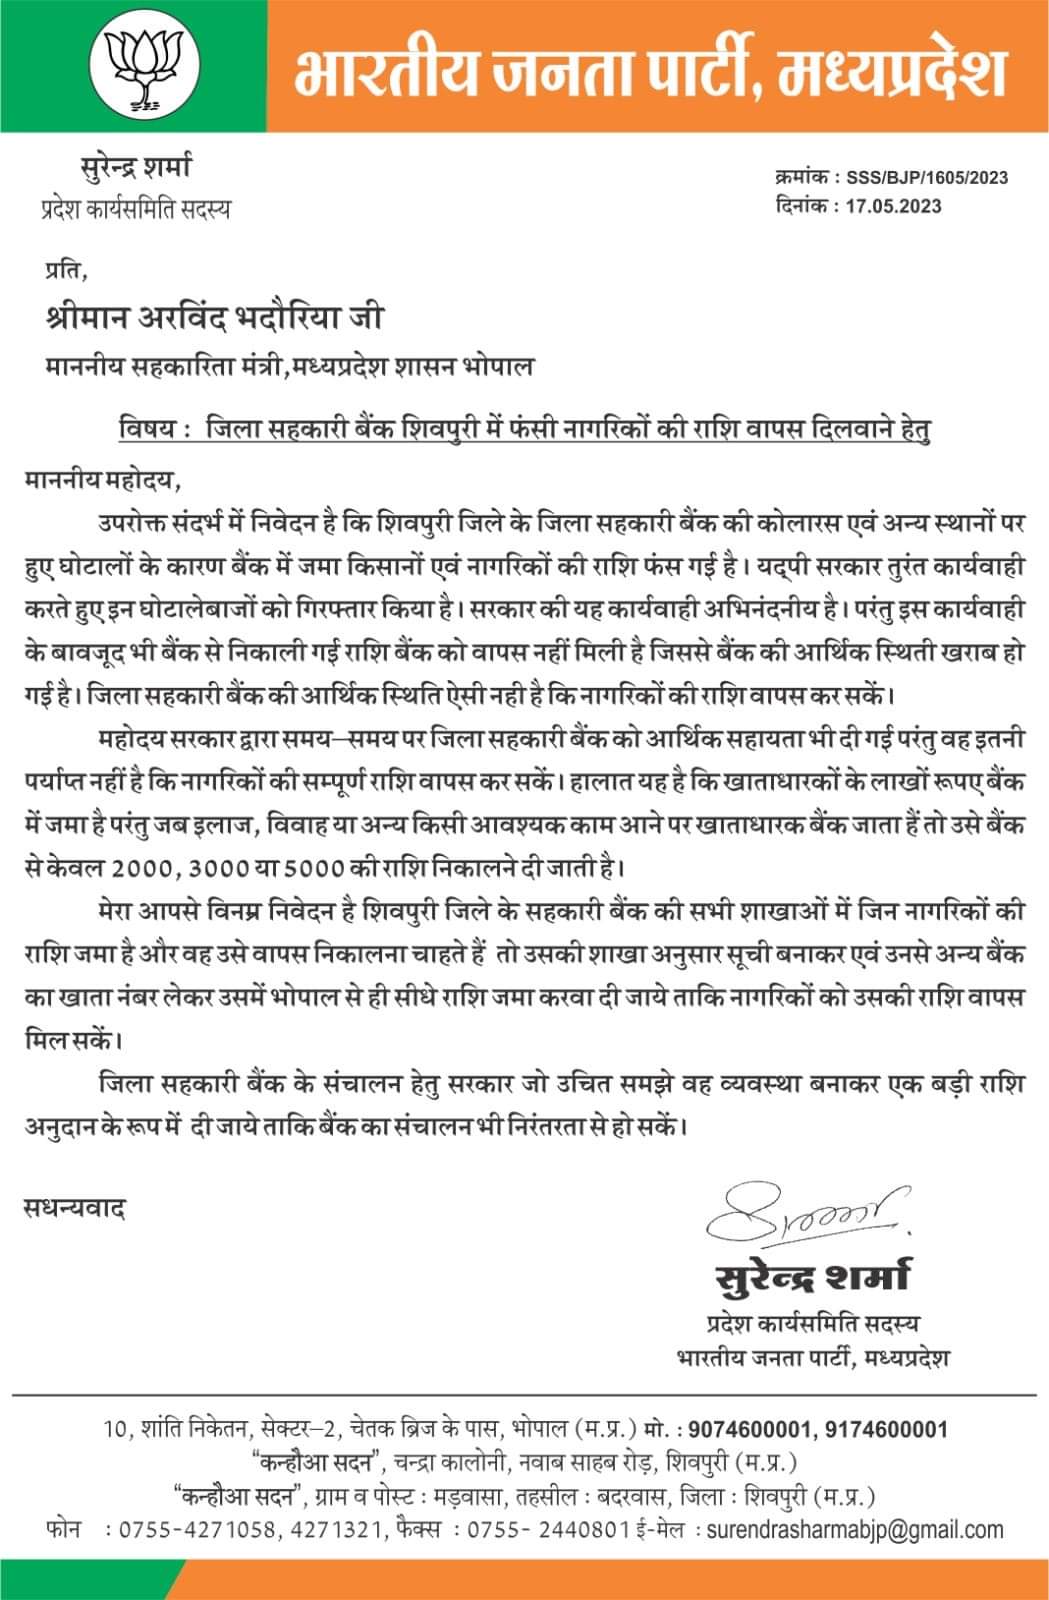 बीजेपी नेता सुरेंद्र शर्मा ने सहकारिता मंत्री को लिखा पत्र, नागरिकों की बैंक में फंसी राशि दिलाने का अनुरोध